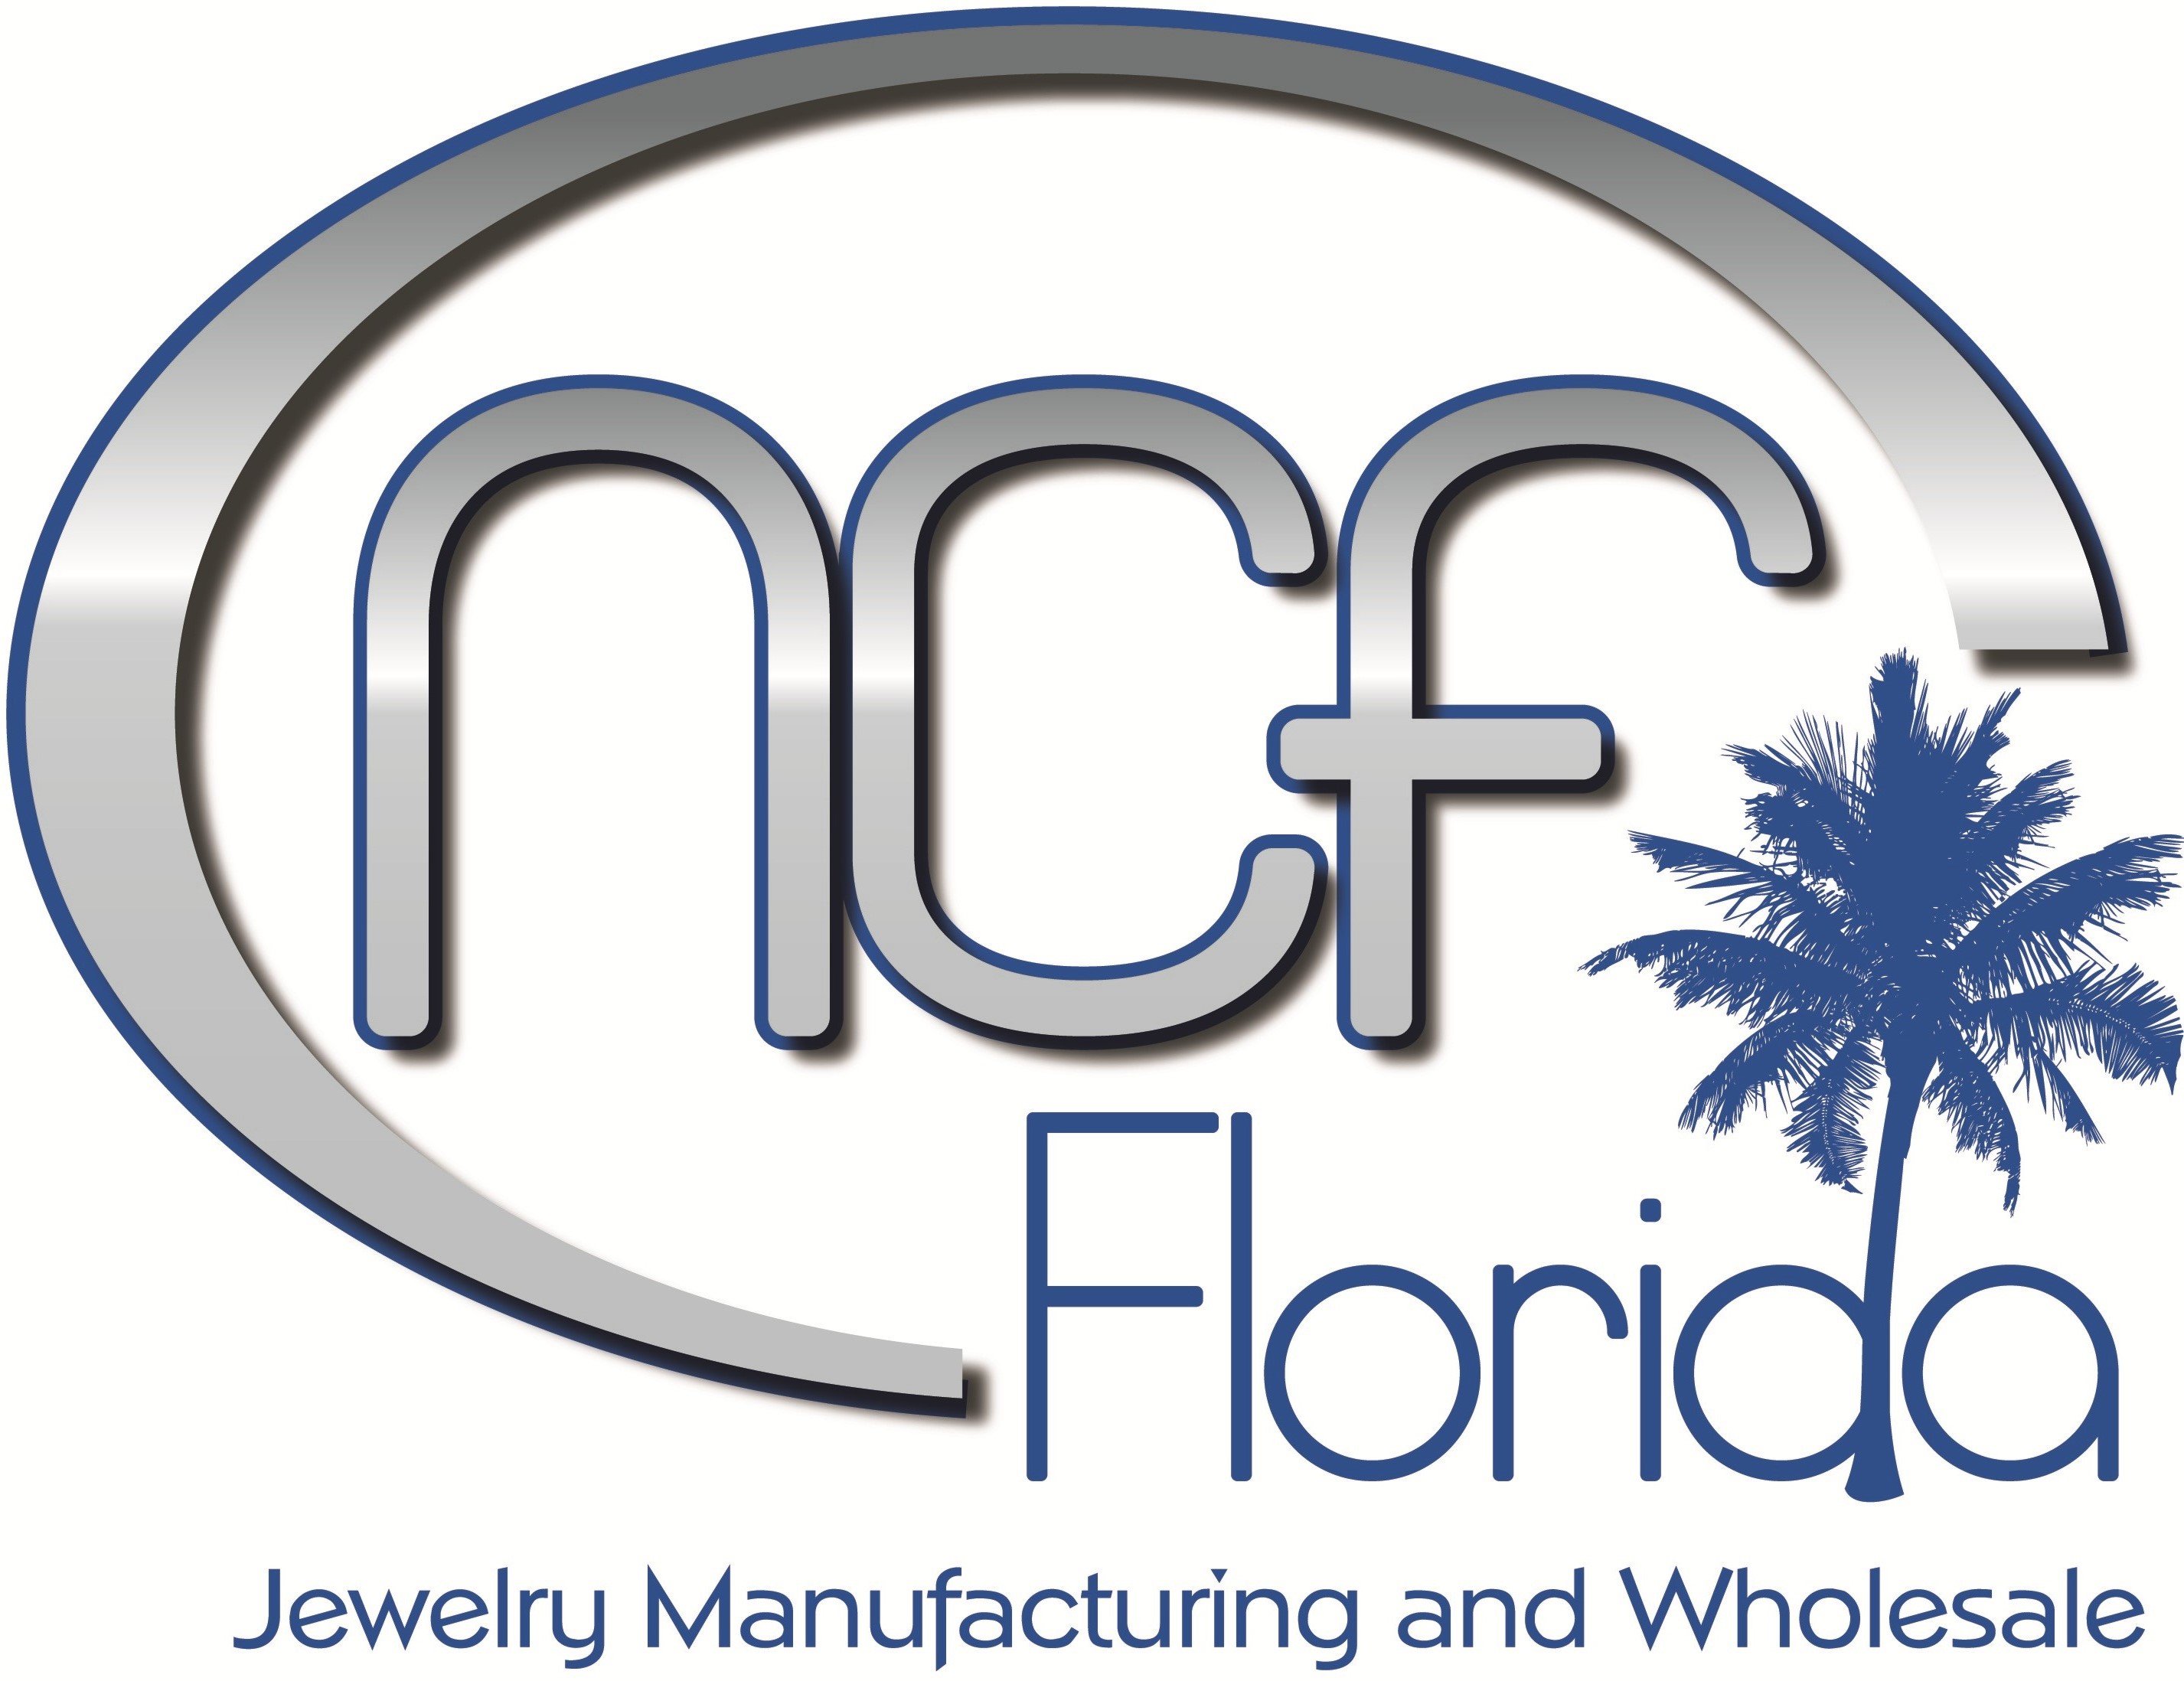 NCF Florida